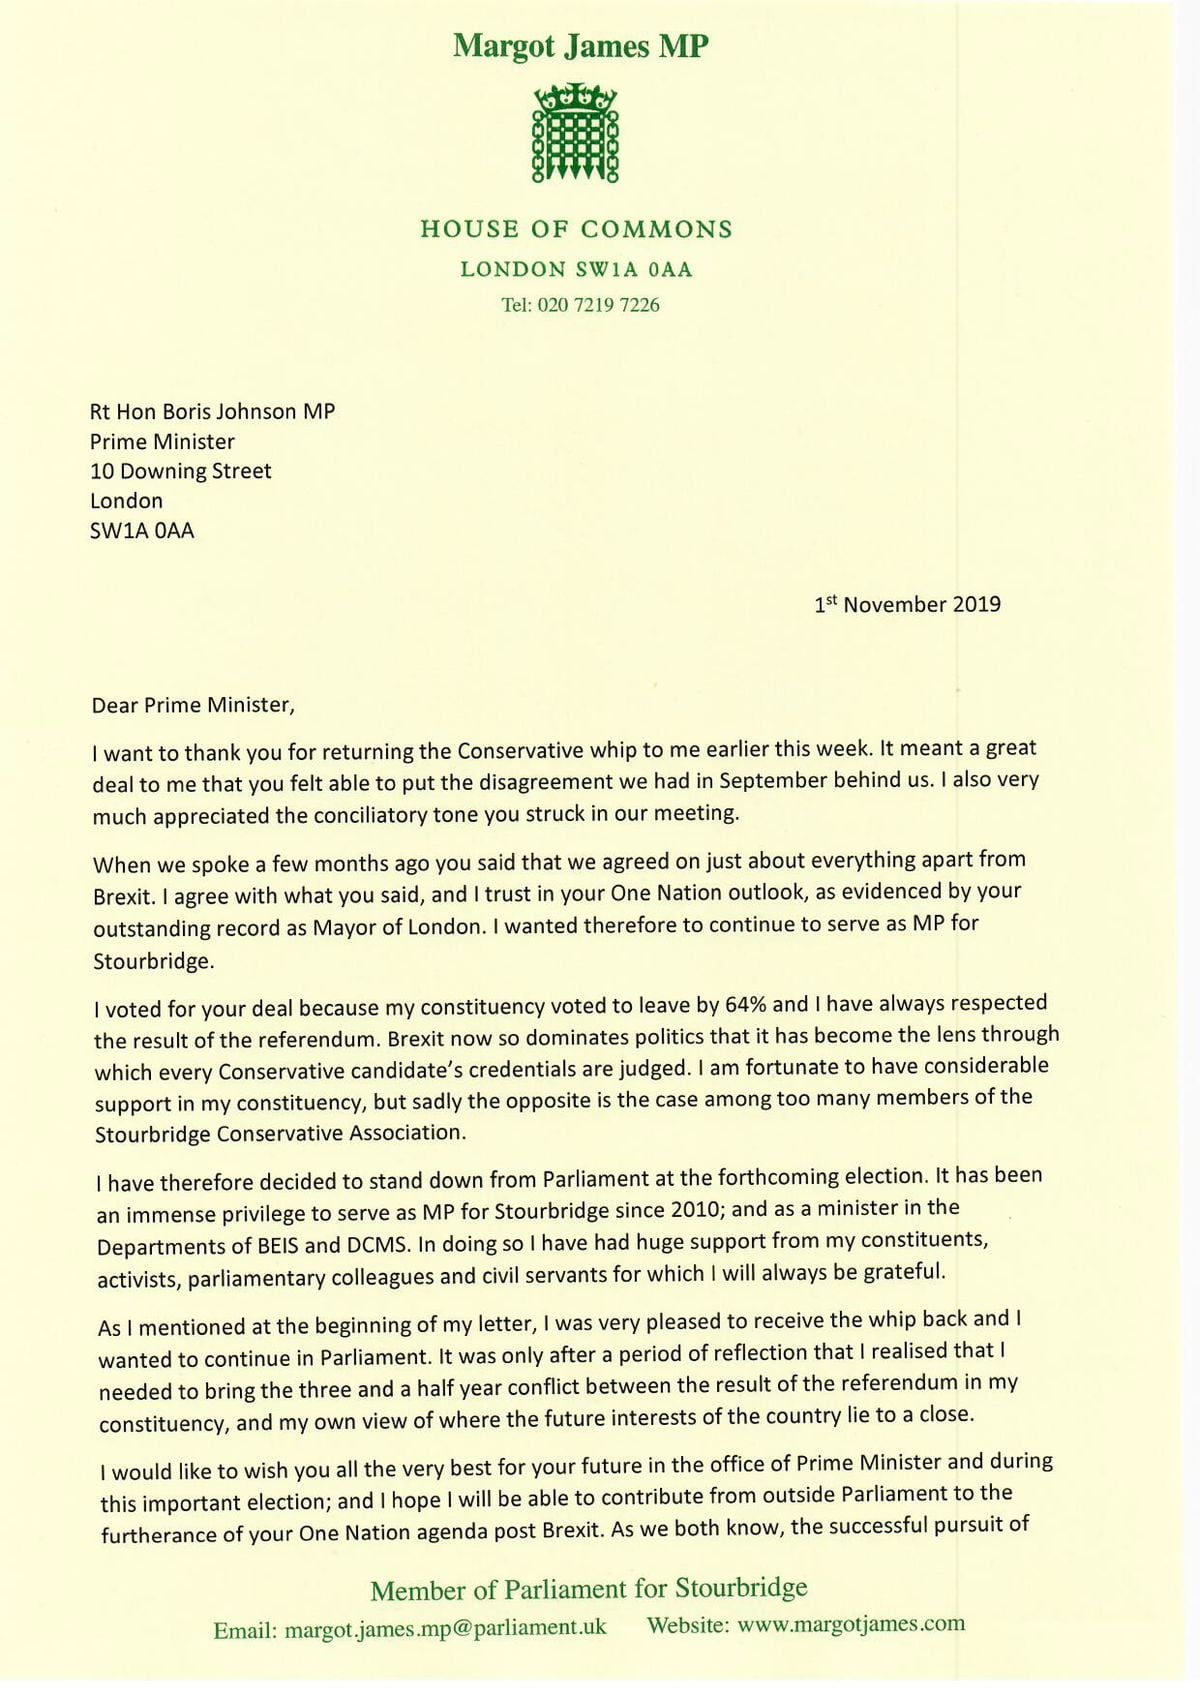 Margot James' letter to Boris Johnson